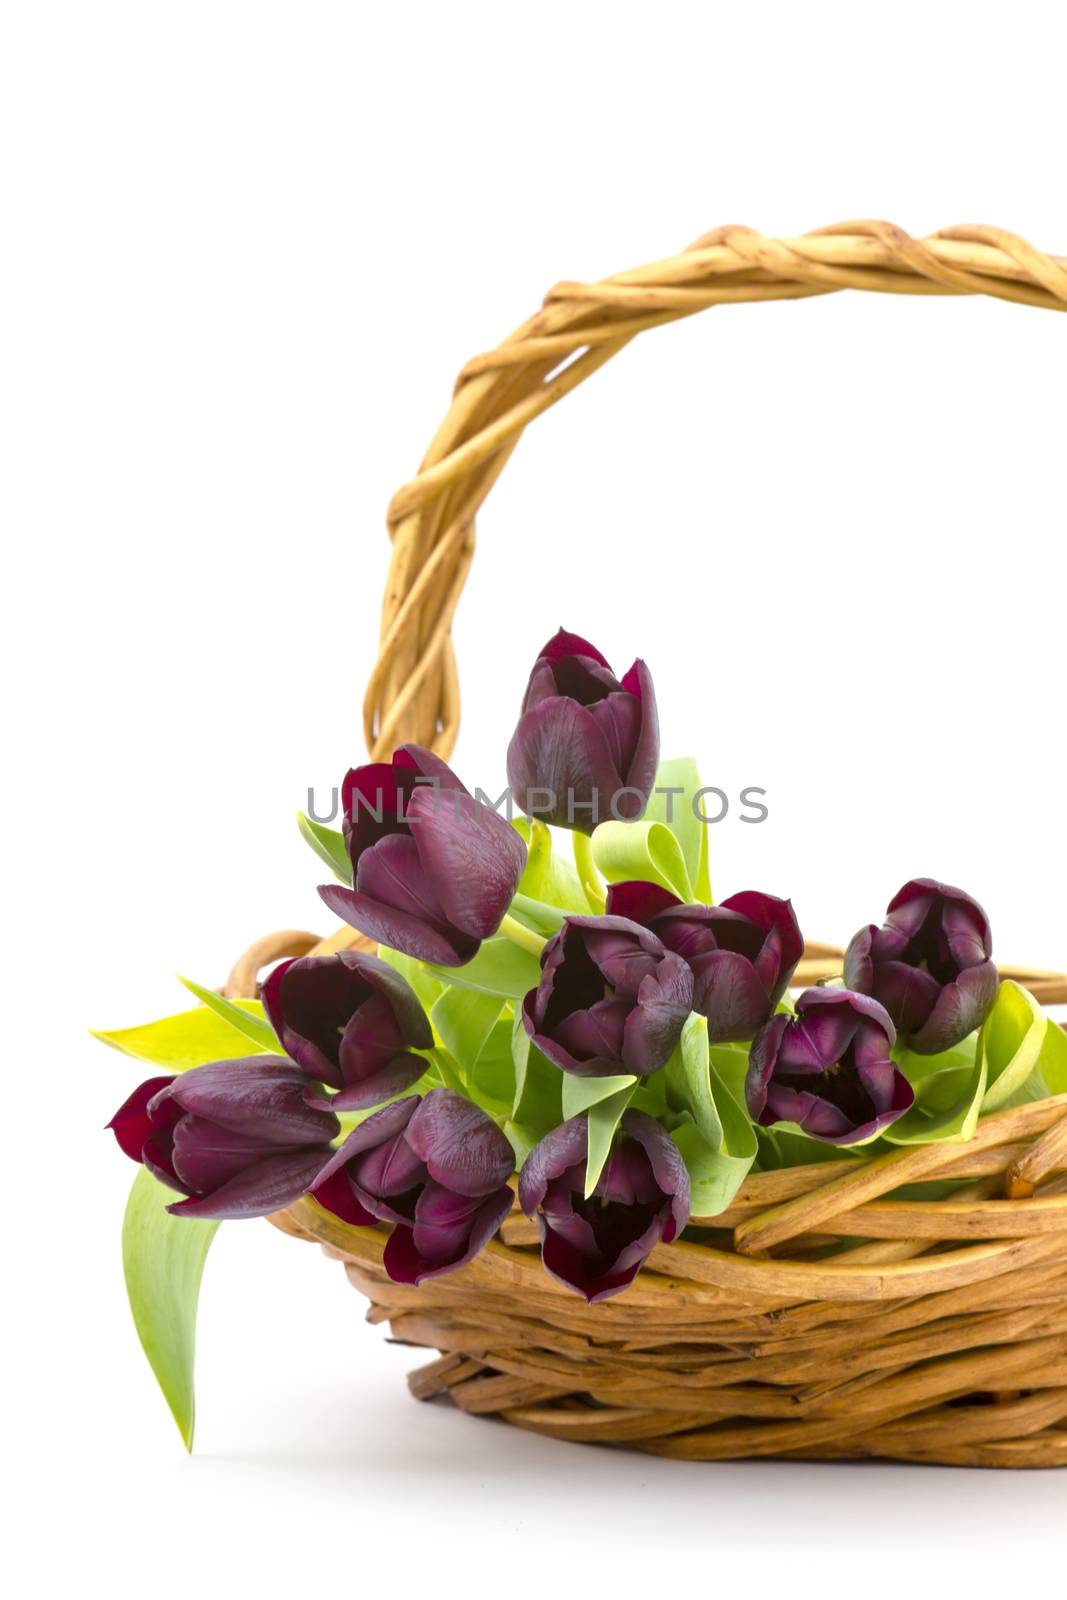 purple tulips in a basket by miradrozdowski